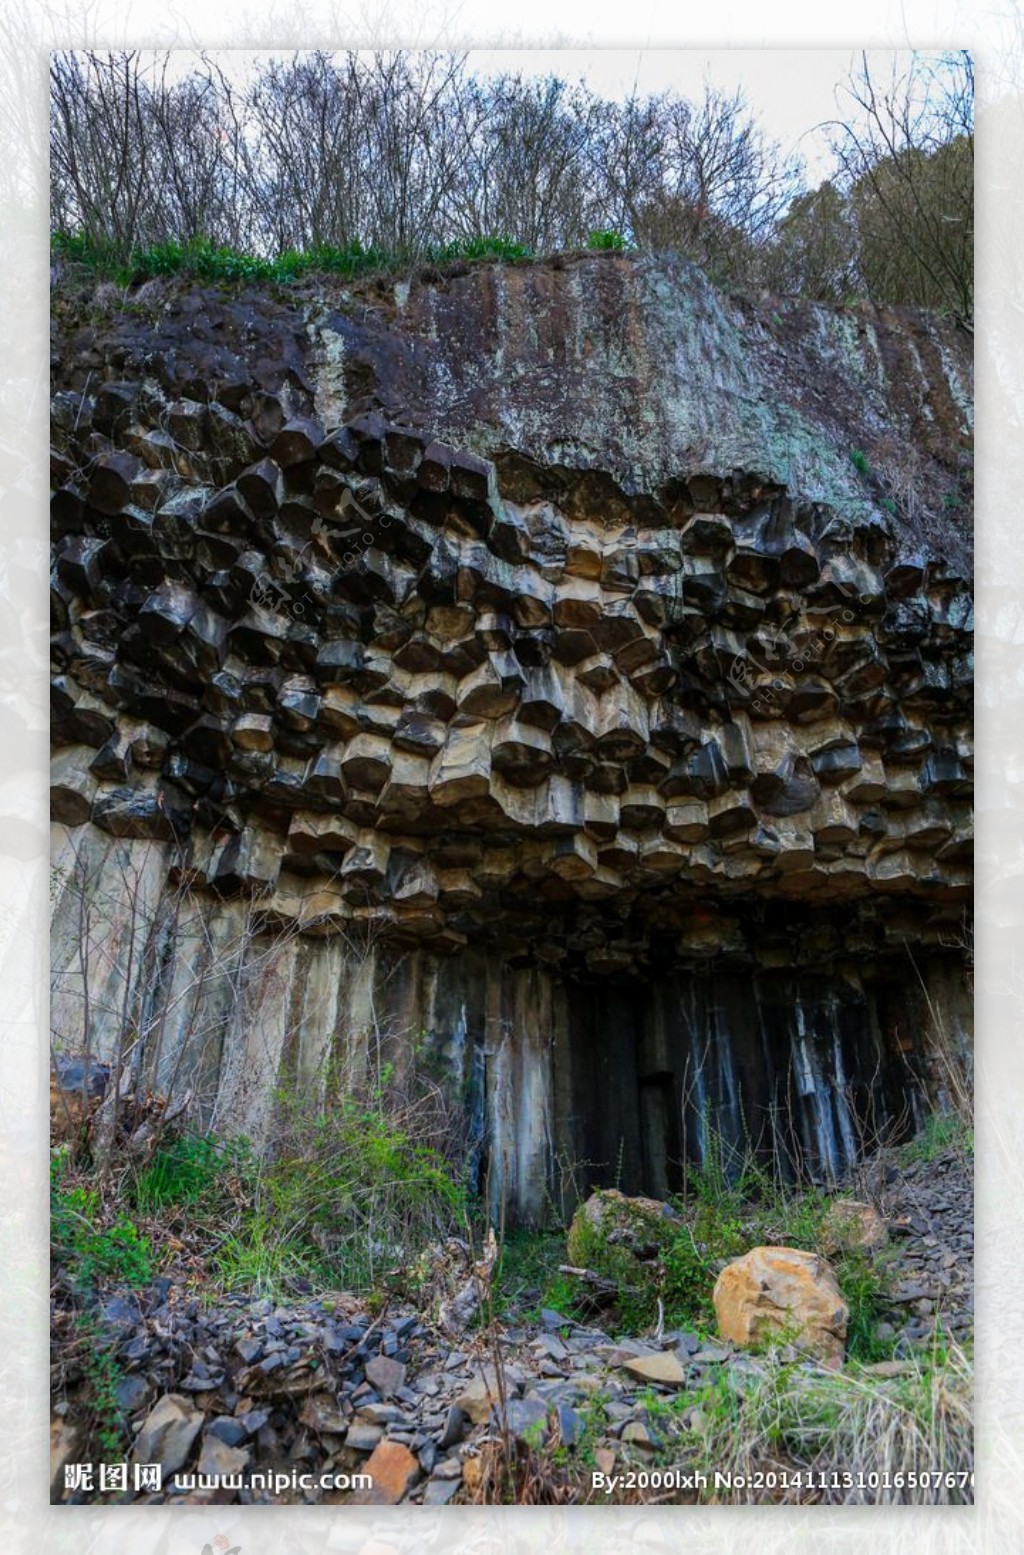 石舍火山岩柱状节理岩图片